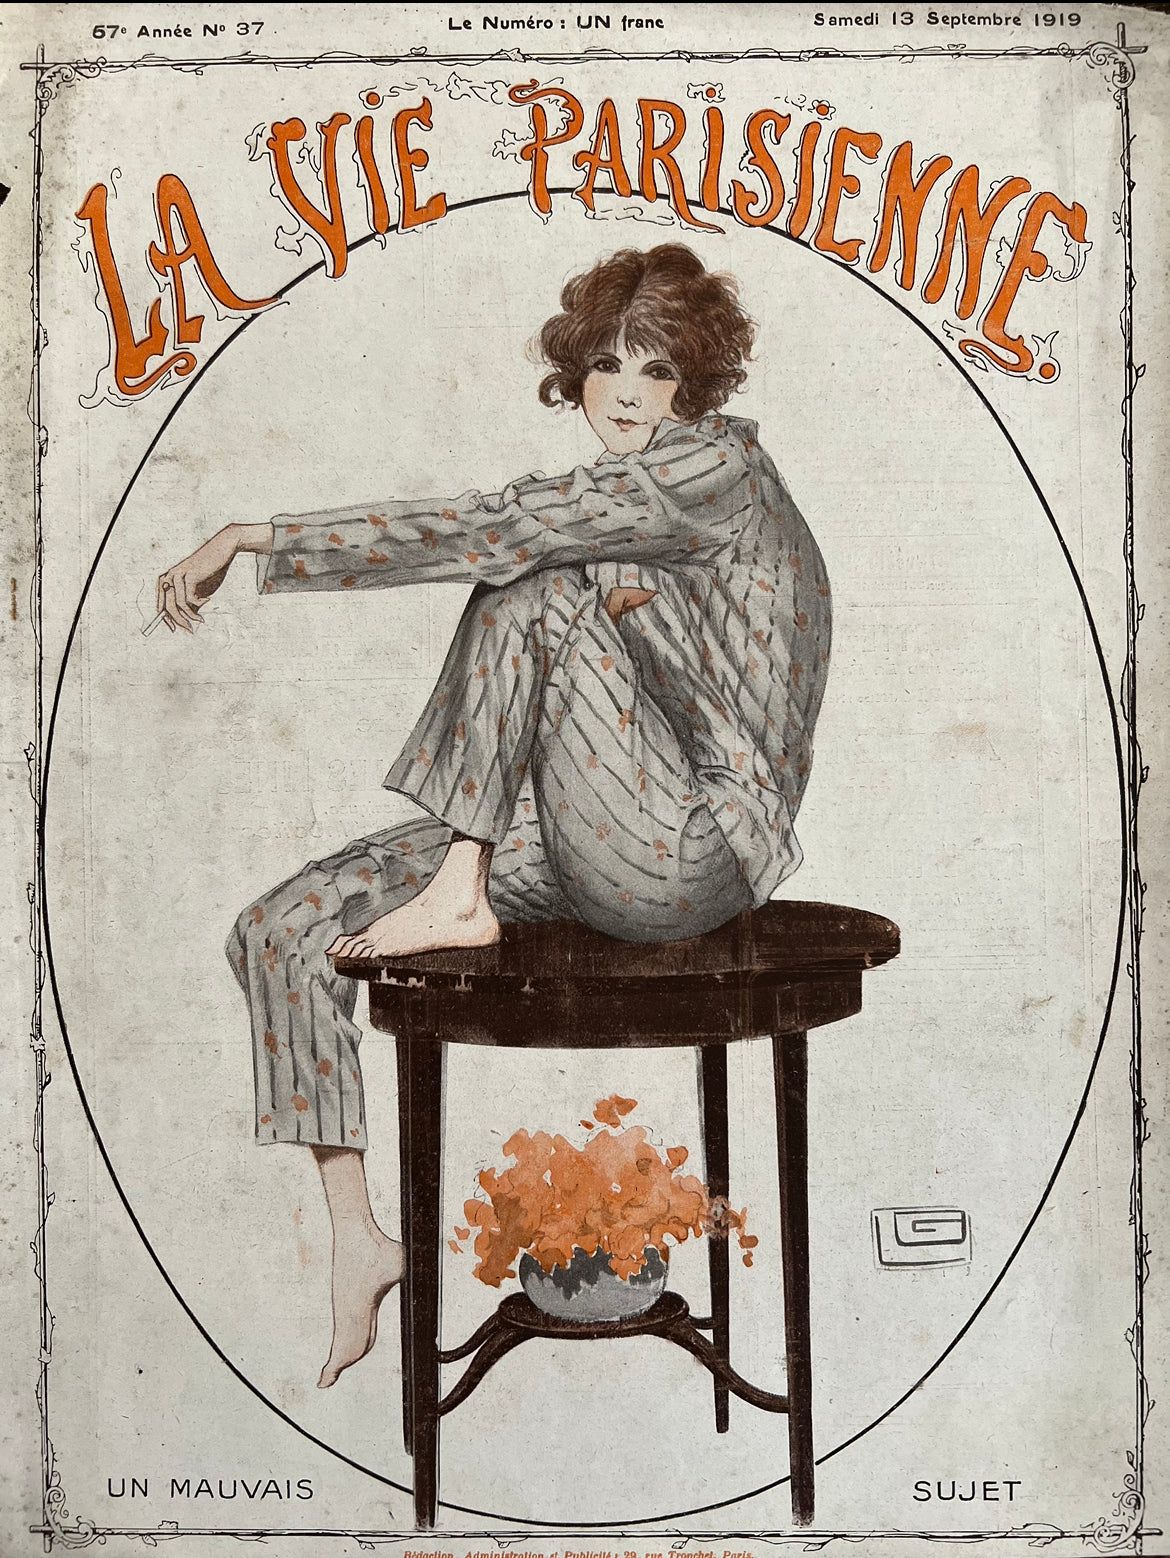 Shop My Collection:La Vie Parisienne Spring